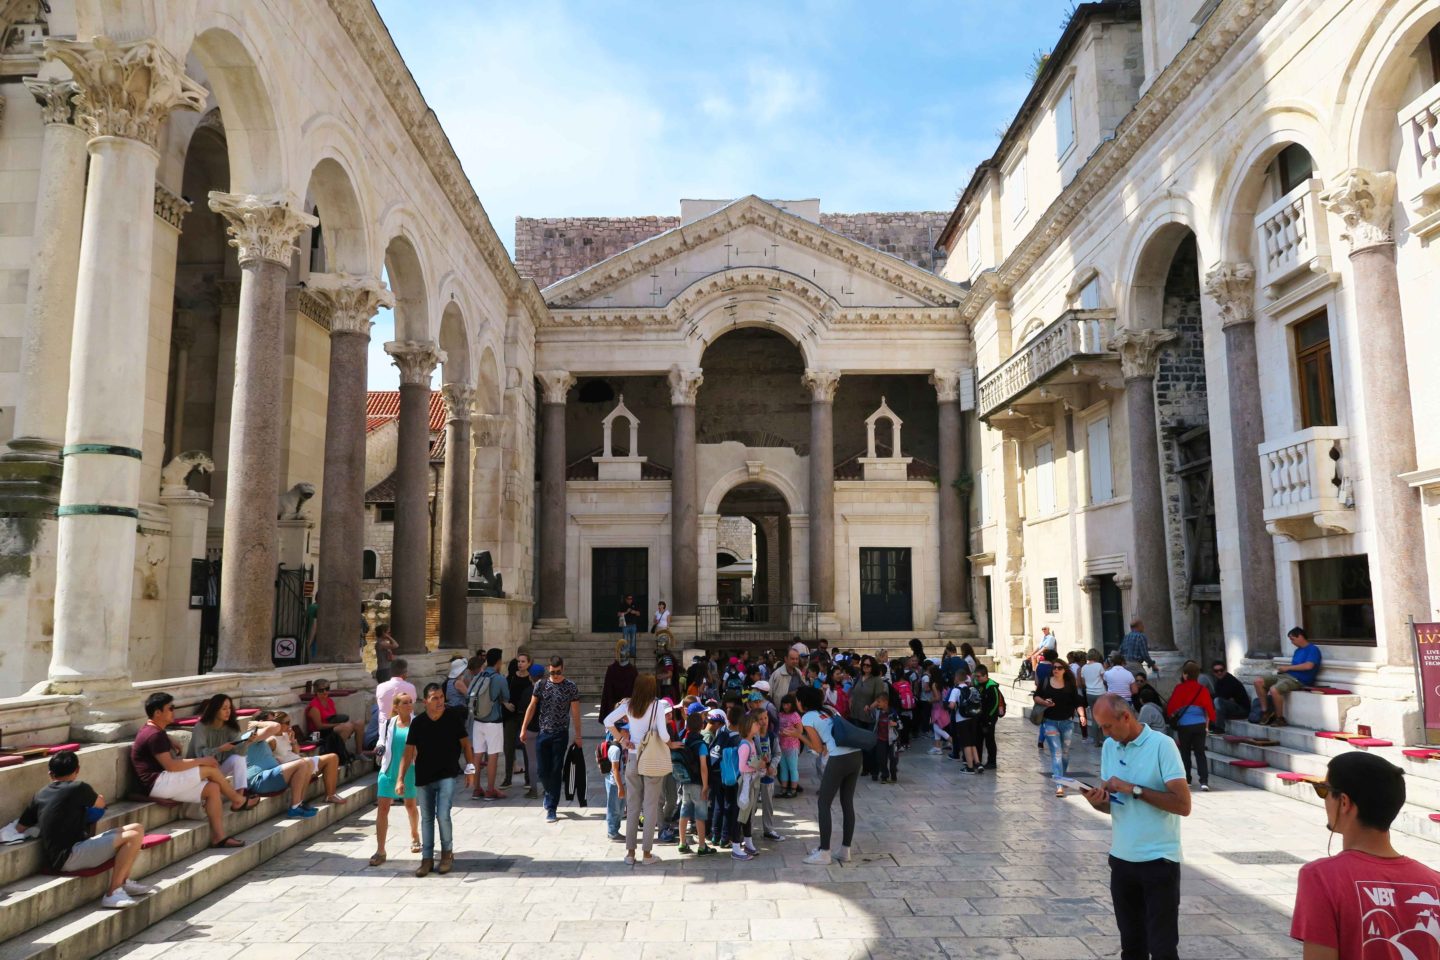 Saint Domnius palace in Split in Croatia